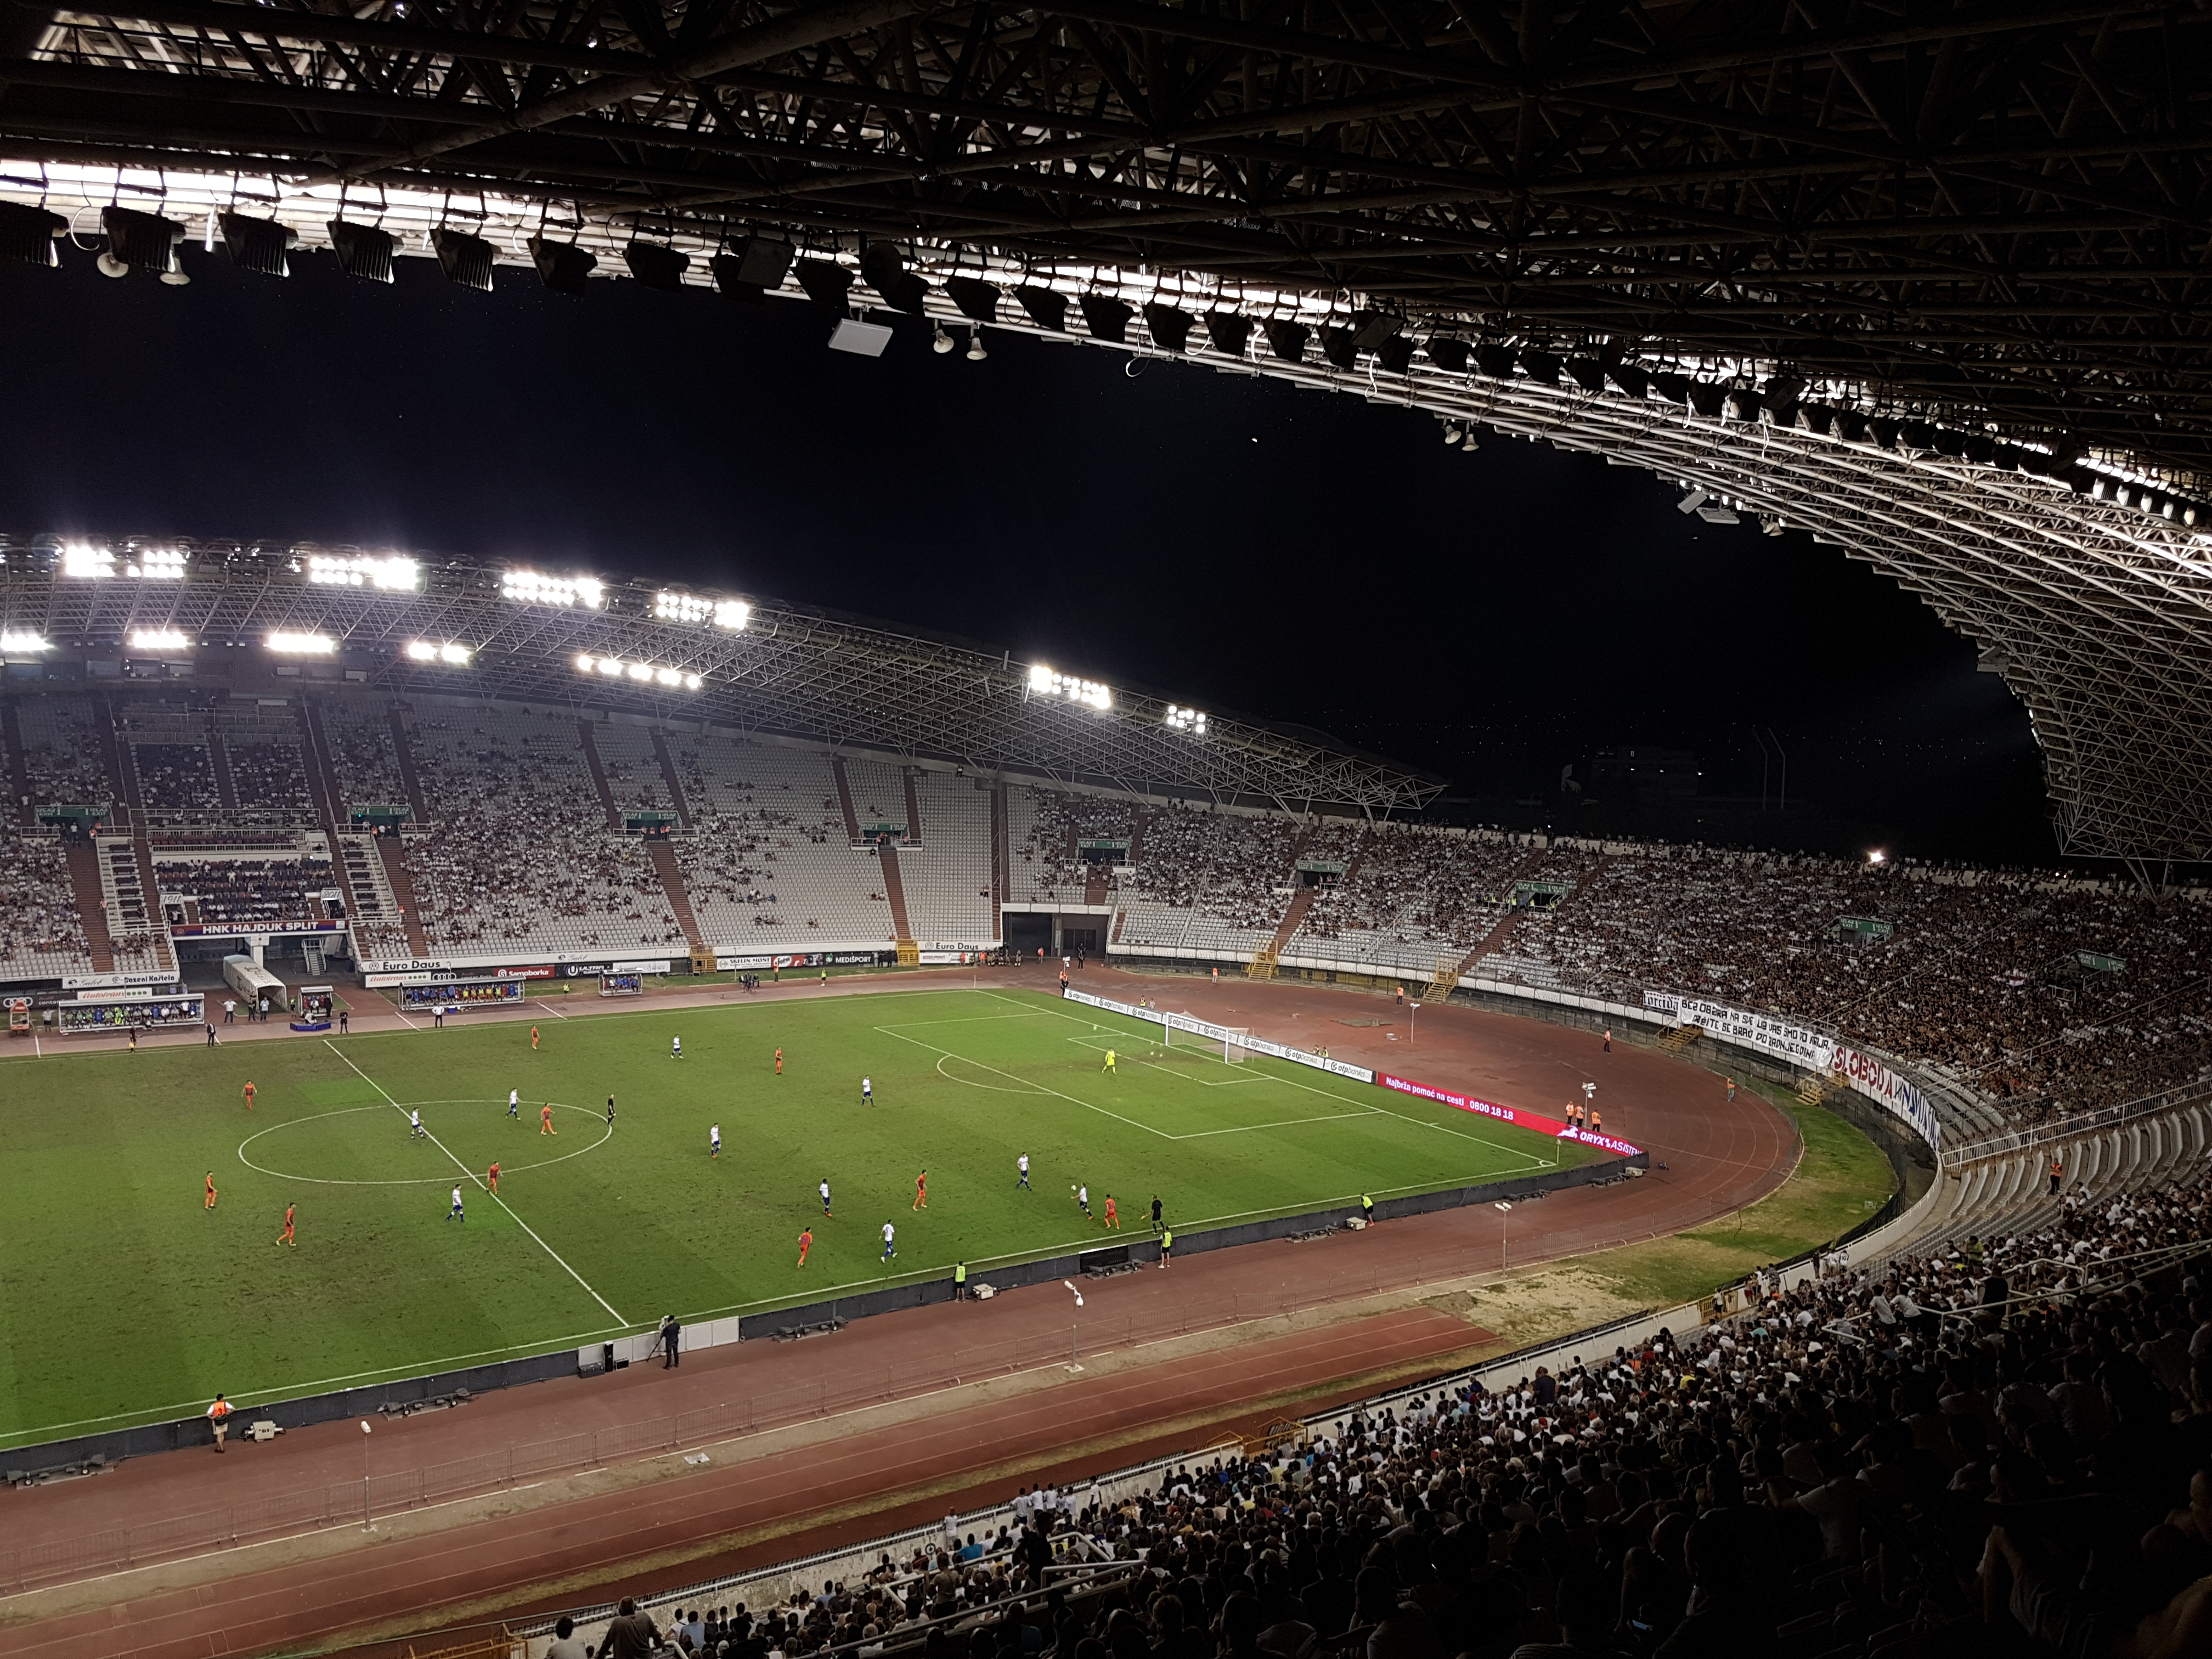 HNK Hajduk Split – Stadion Poljud – Gibbo's 92